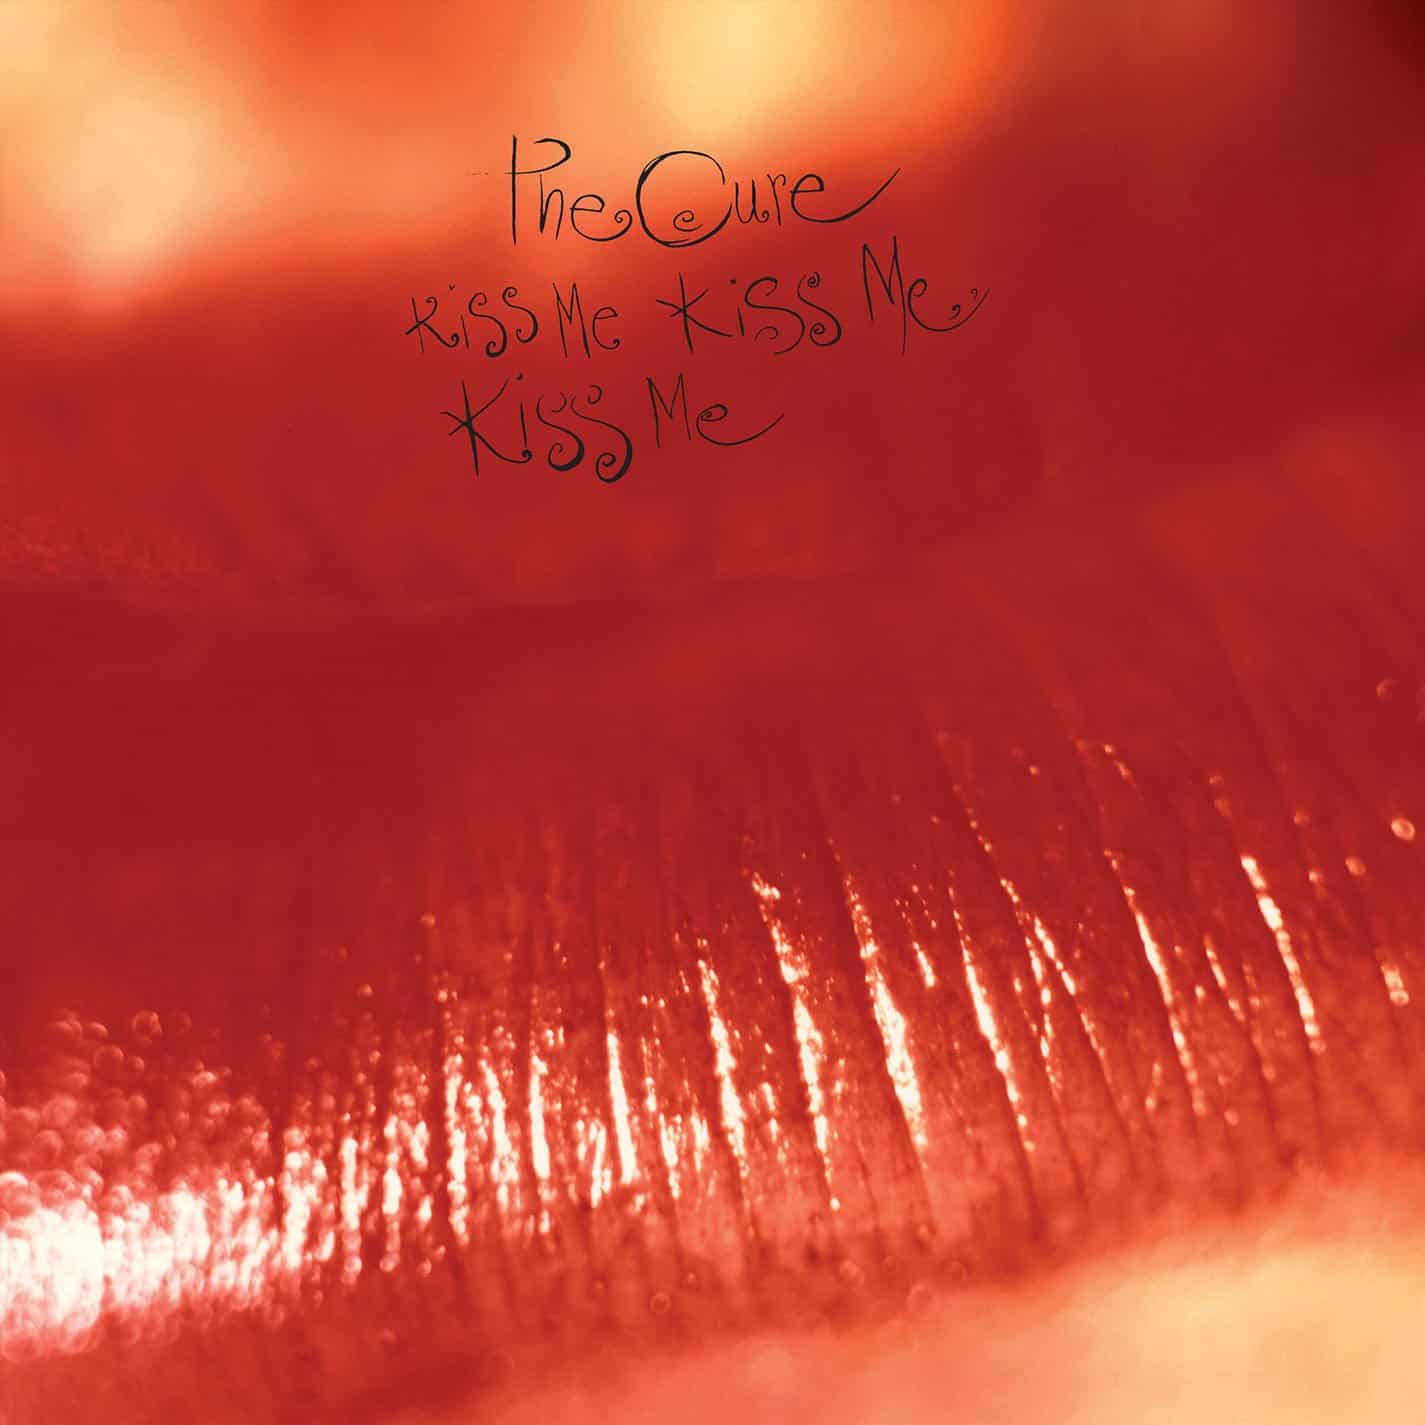 The-Cure-Kiss-Me-Kiss-Me-LP-vinyl-record-album-front